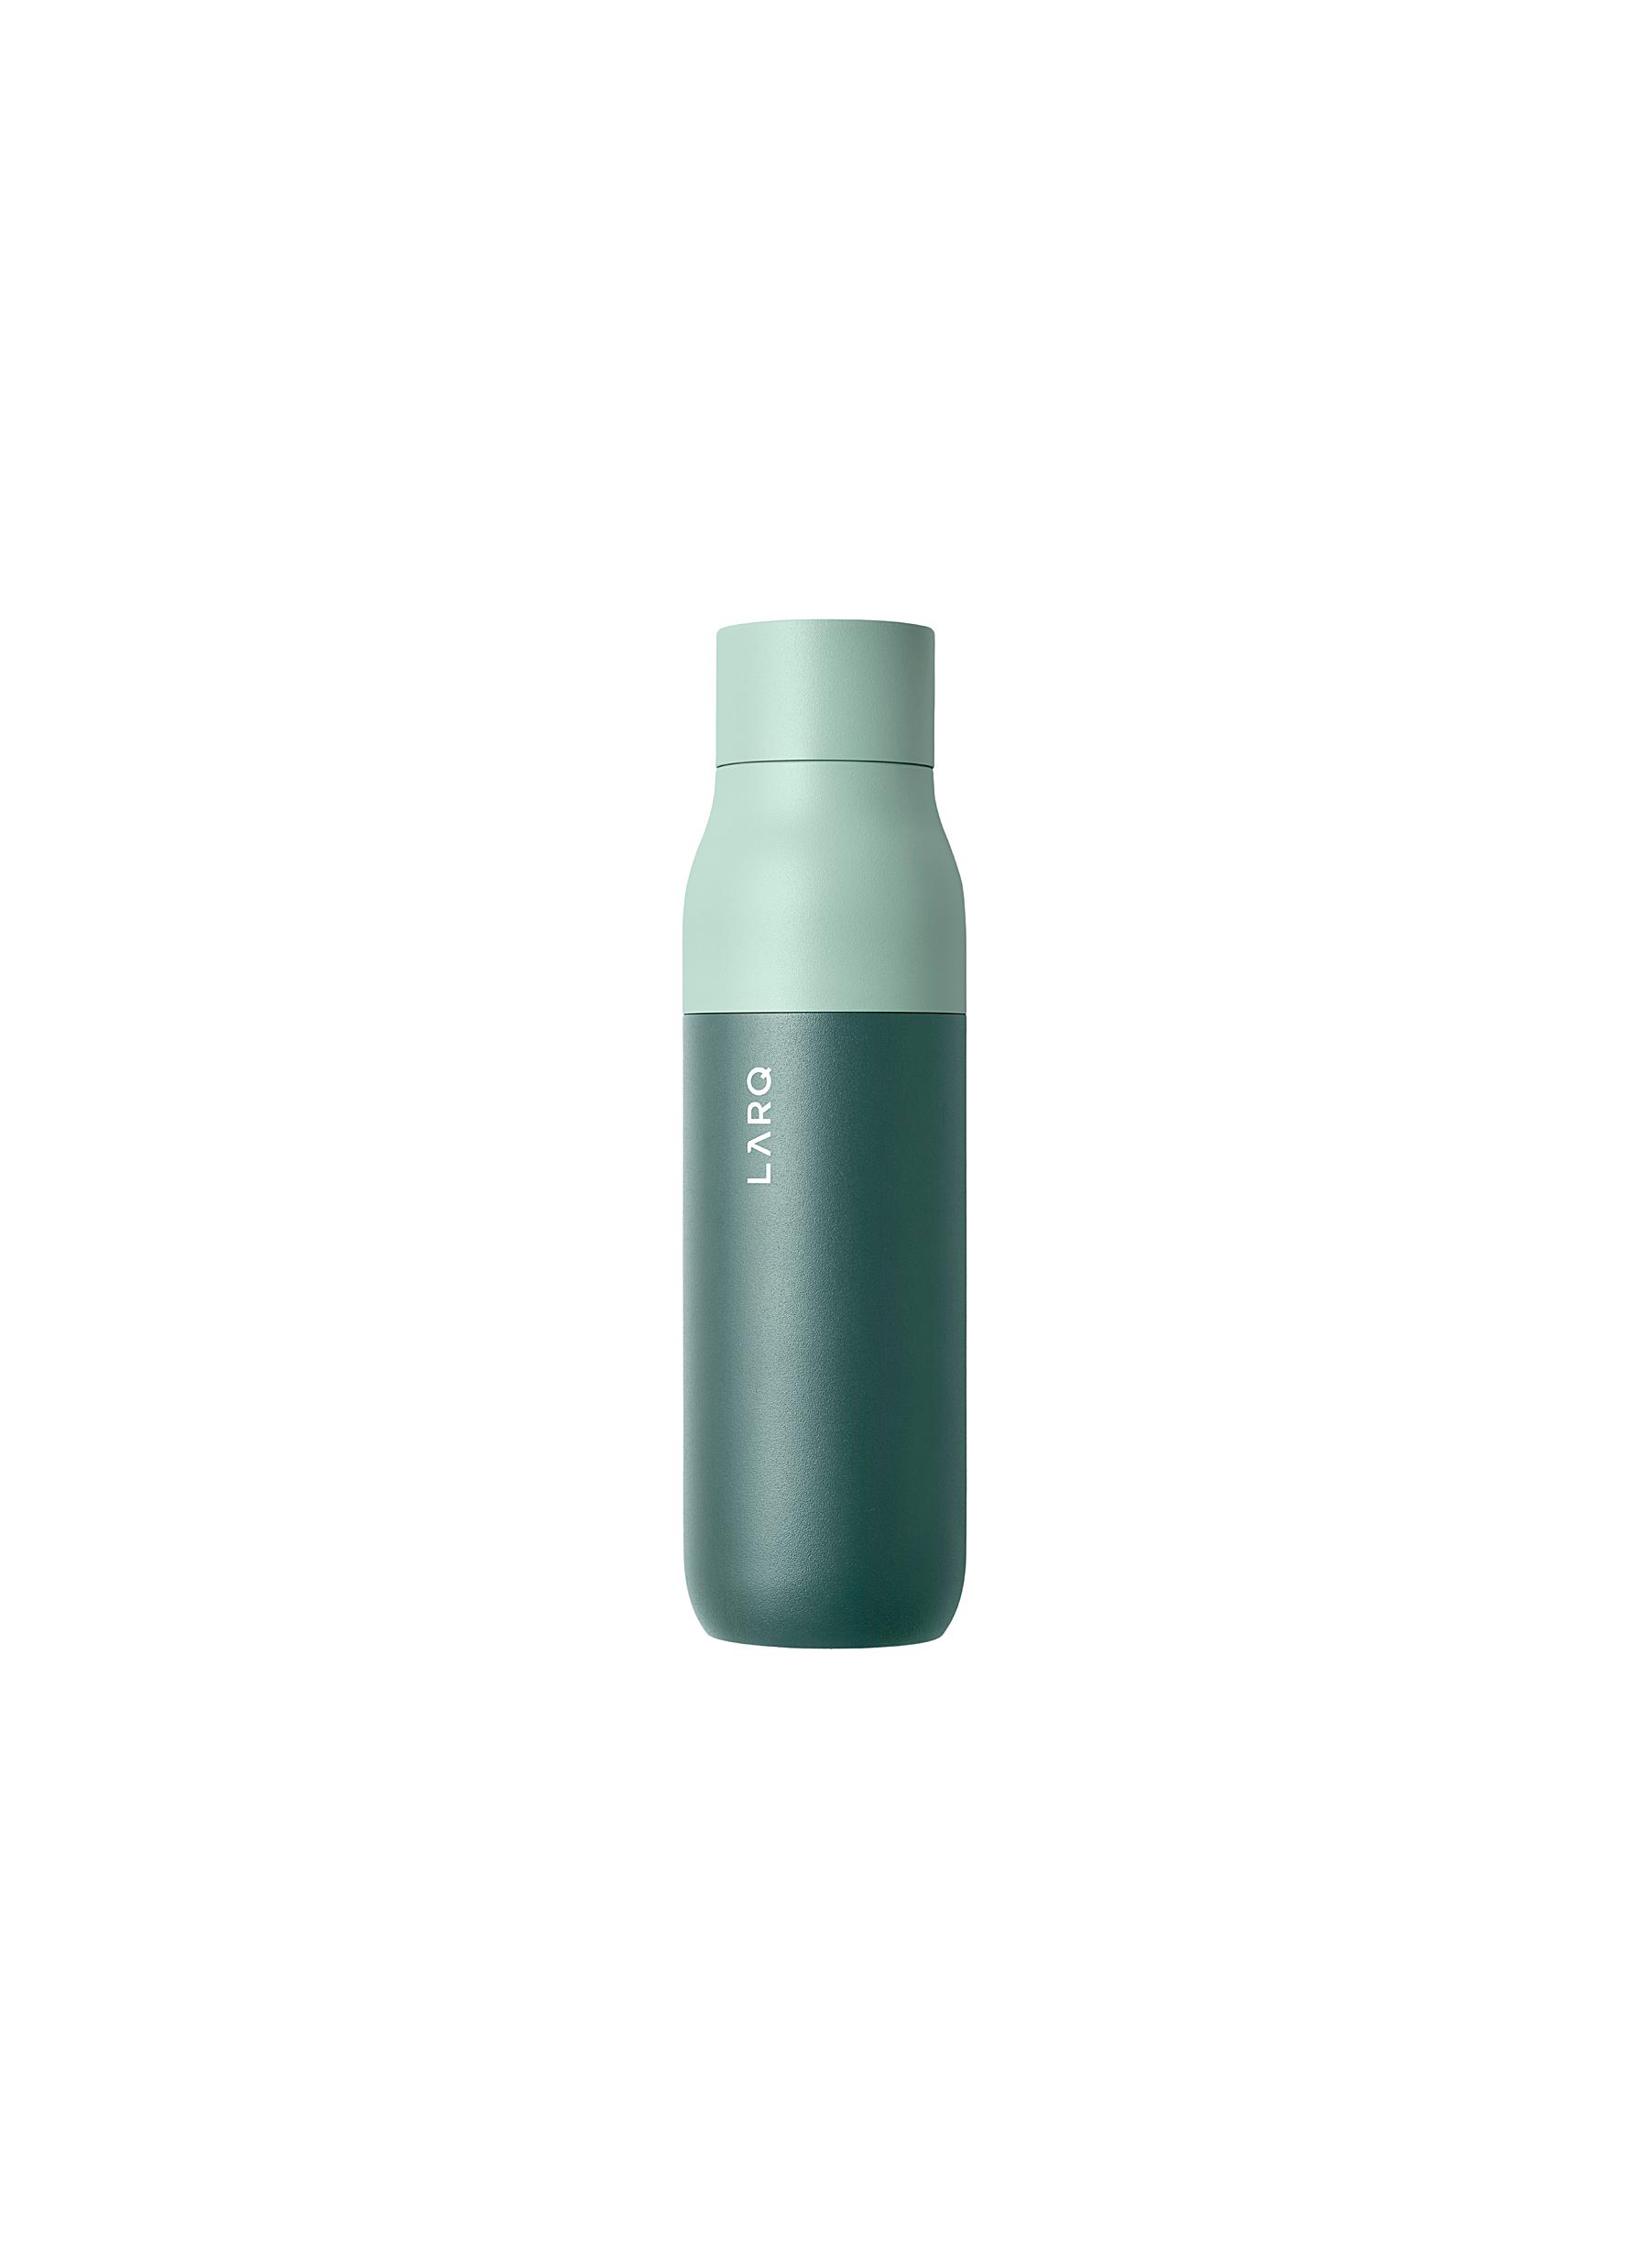 LARQ Bottle PureVis Eucalyptus Green 500ml – Lifestyle Retail